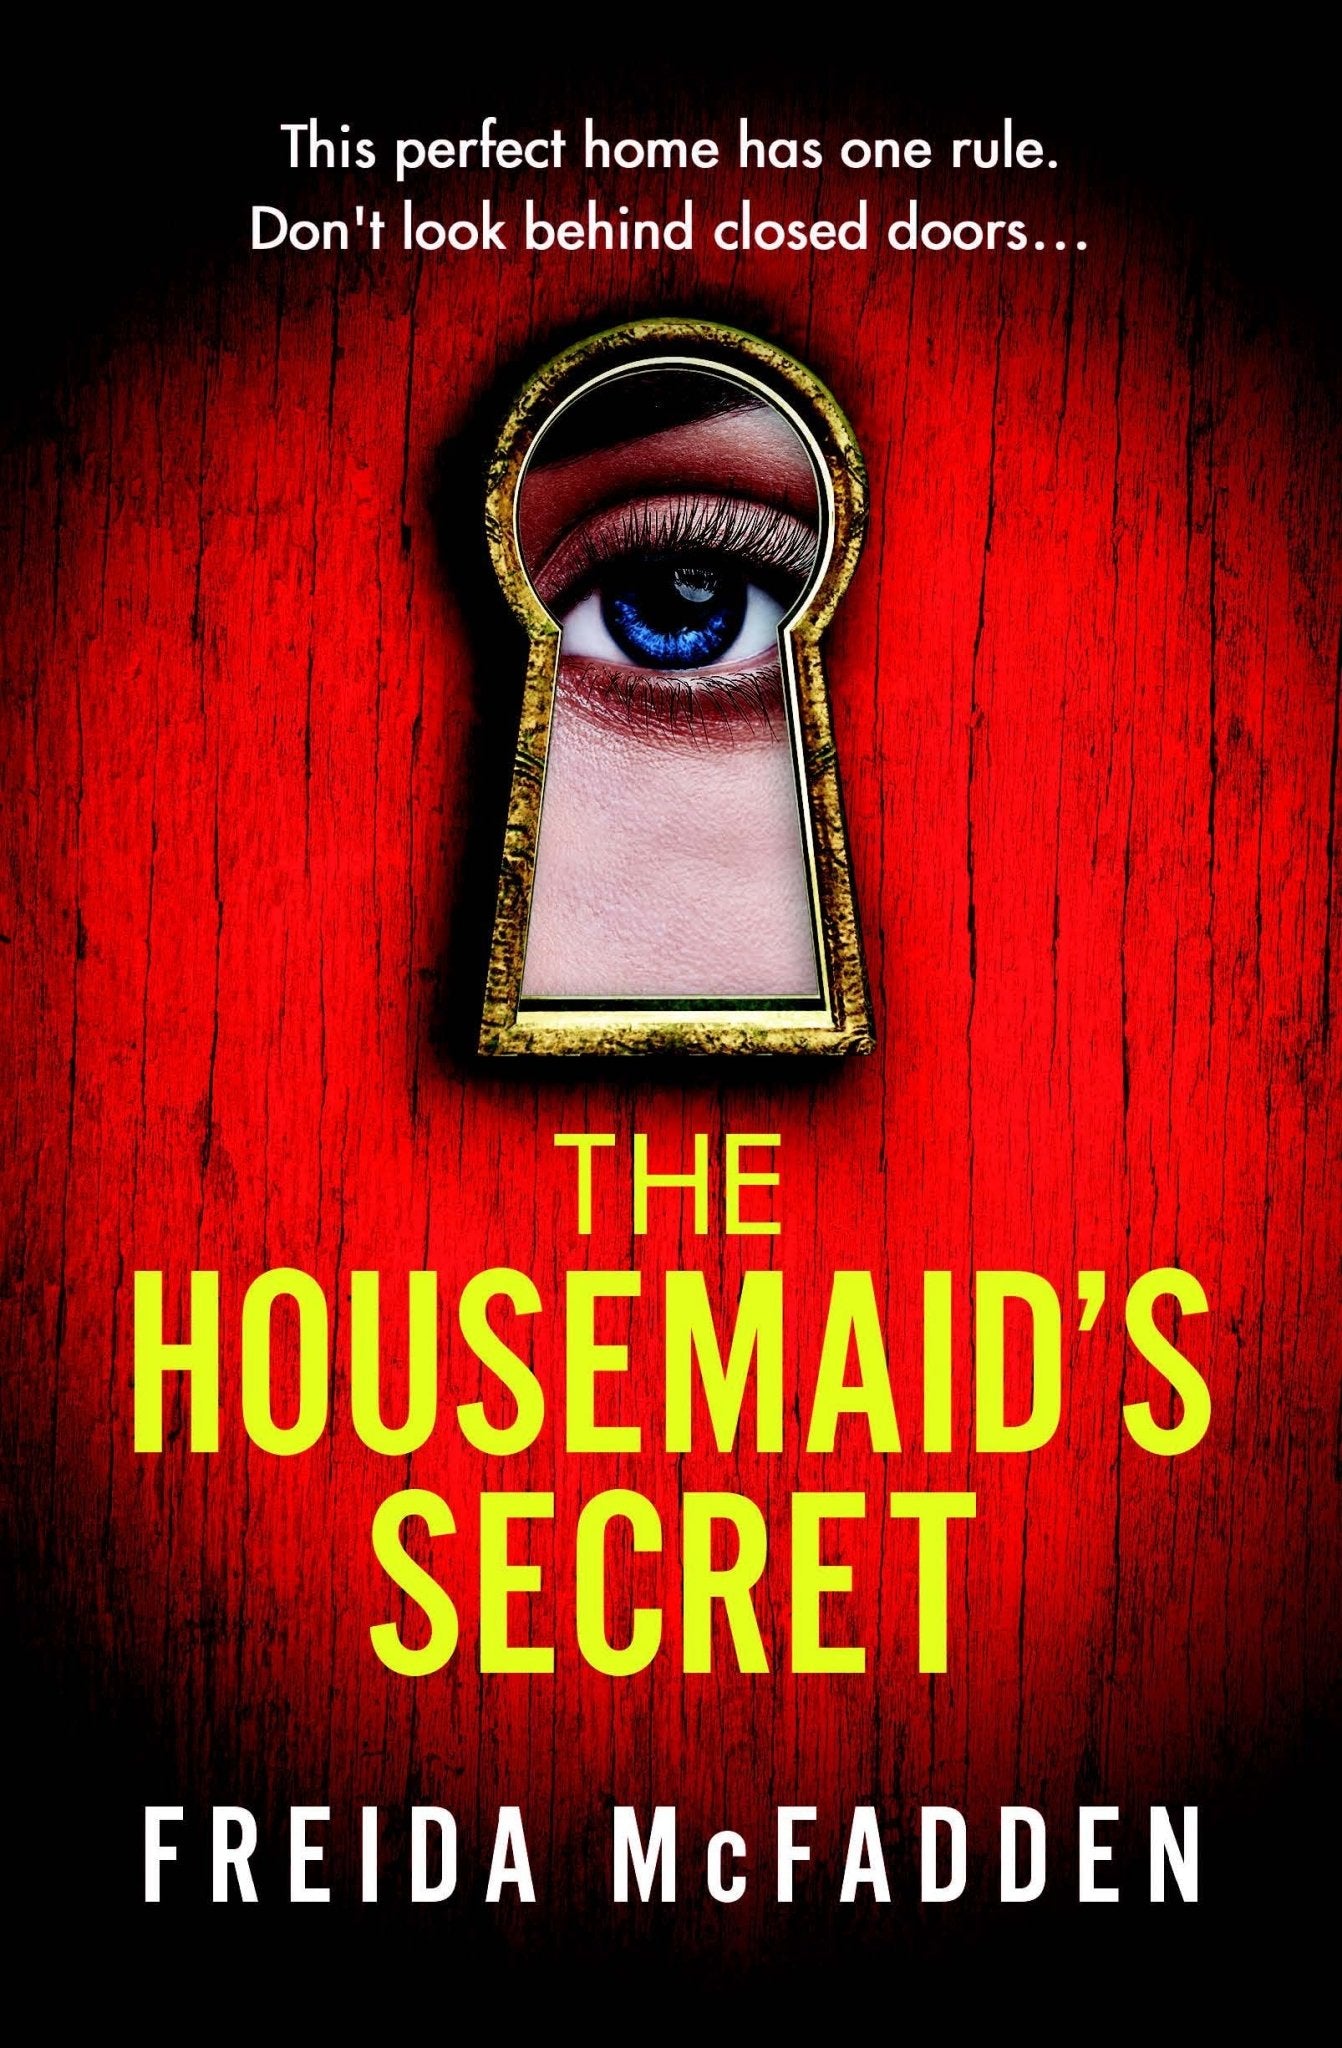 The Housemaid's Secret by Freida McFadden [Paperback] - LV'S Global Media